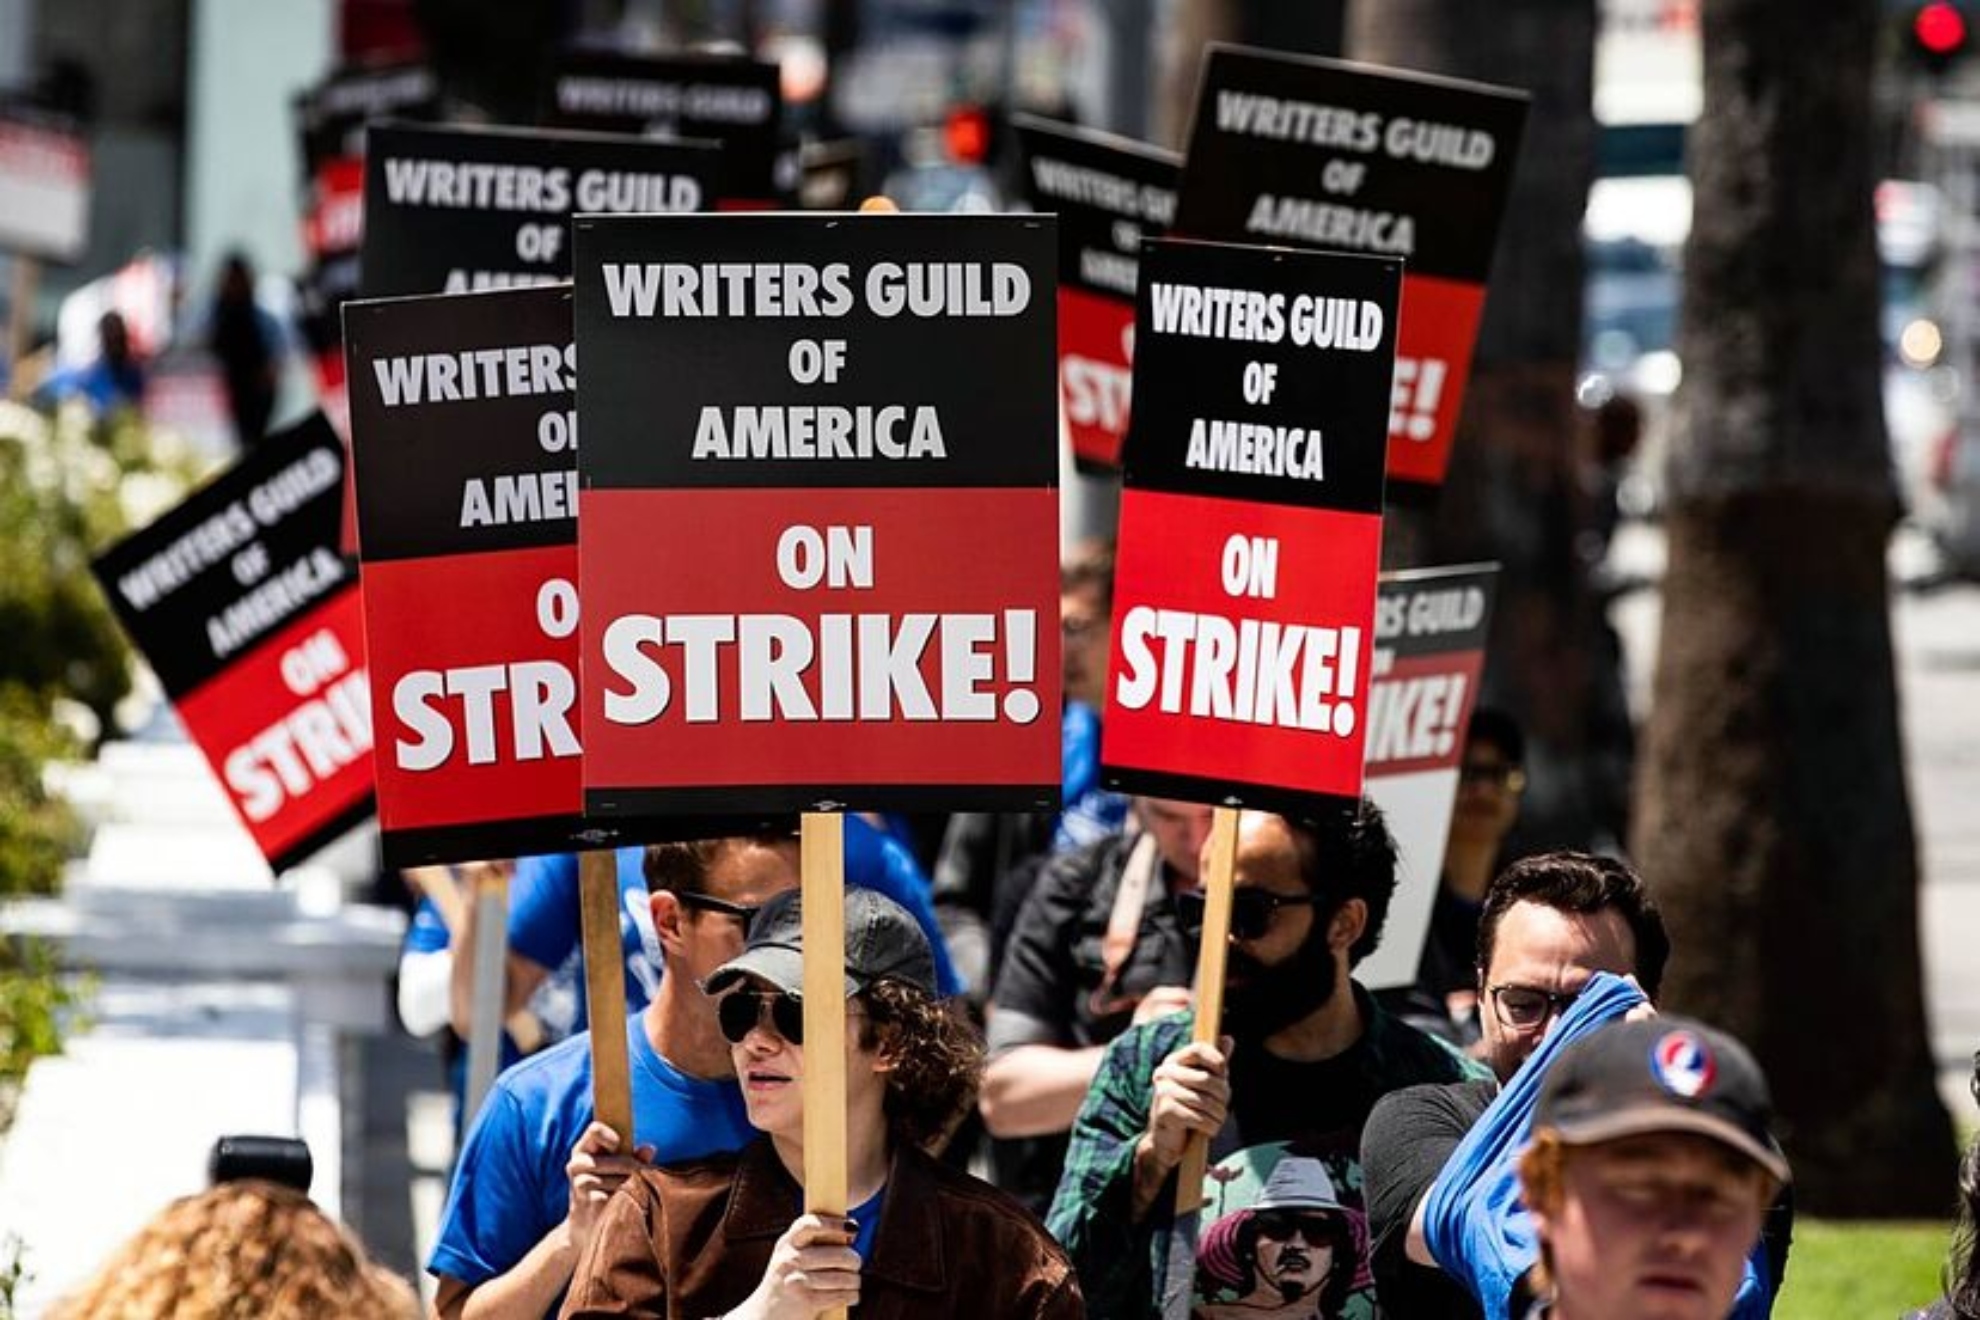 Los directores y los guionistas de Hollywood llegan a un acuerdo para acabar con la huelga